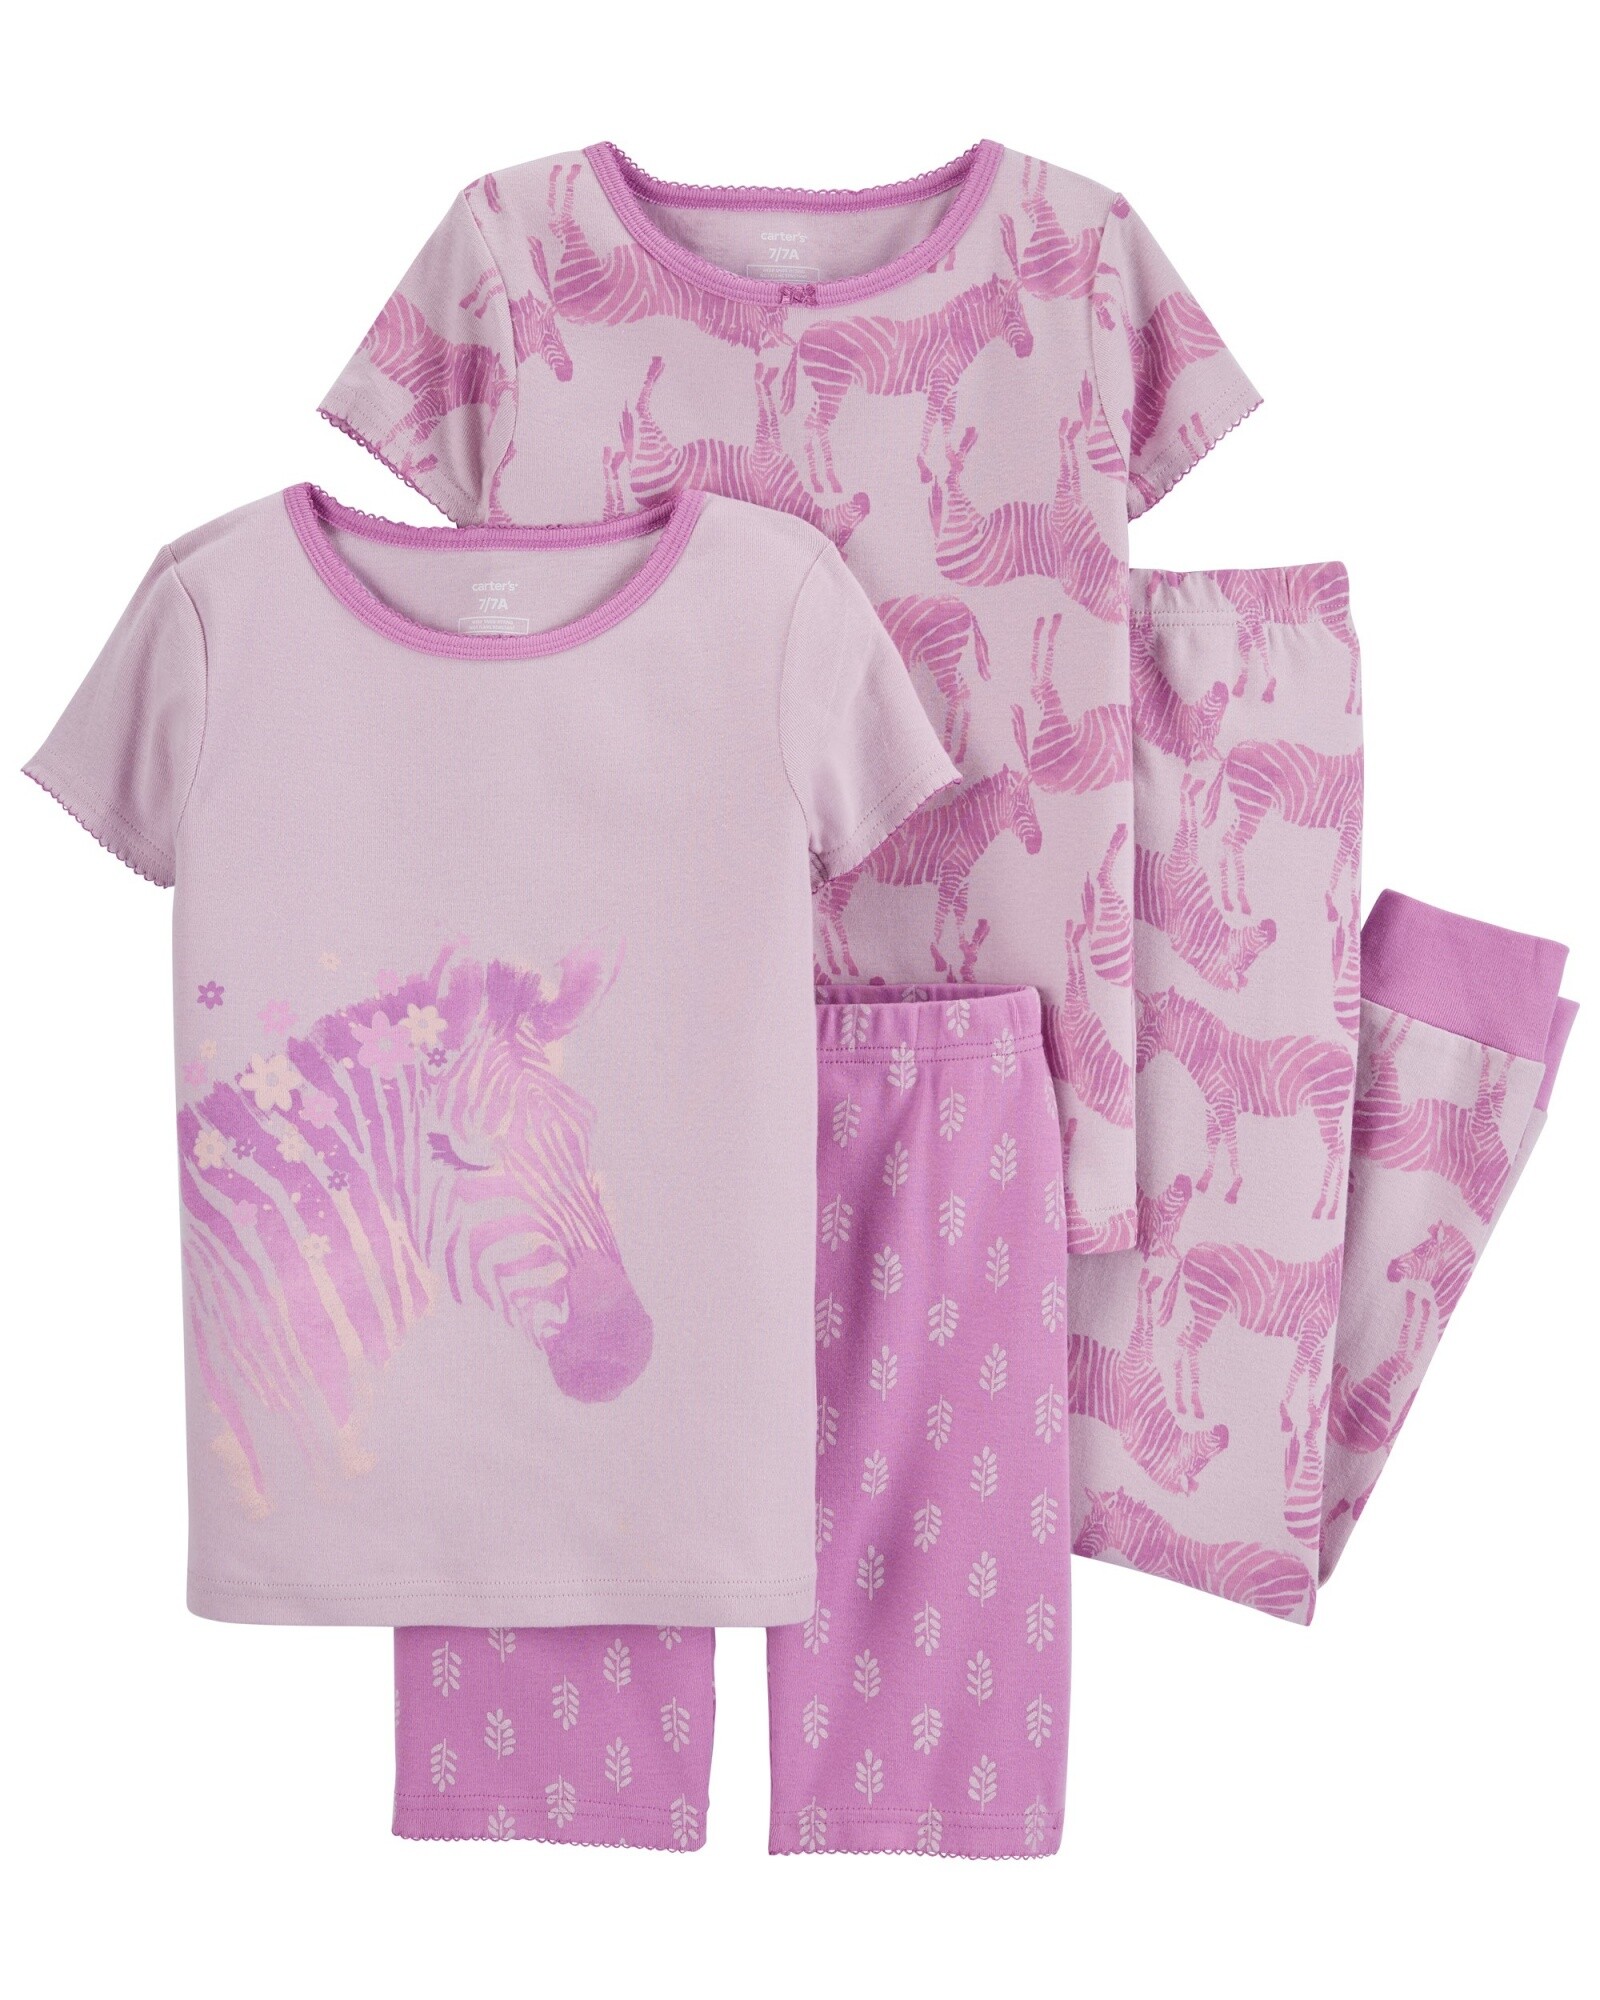 Pijama cuatro piezas de algodón, remeras, pantalón y short diseño cebra Sin color